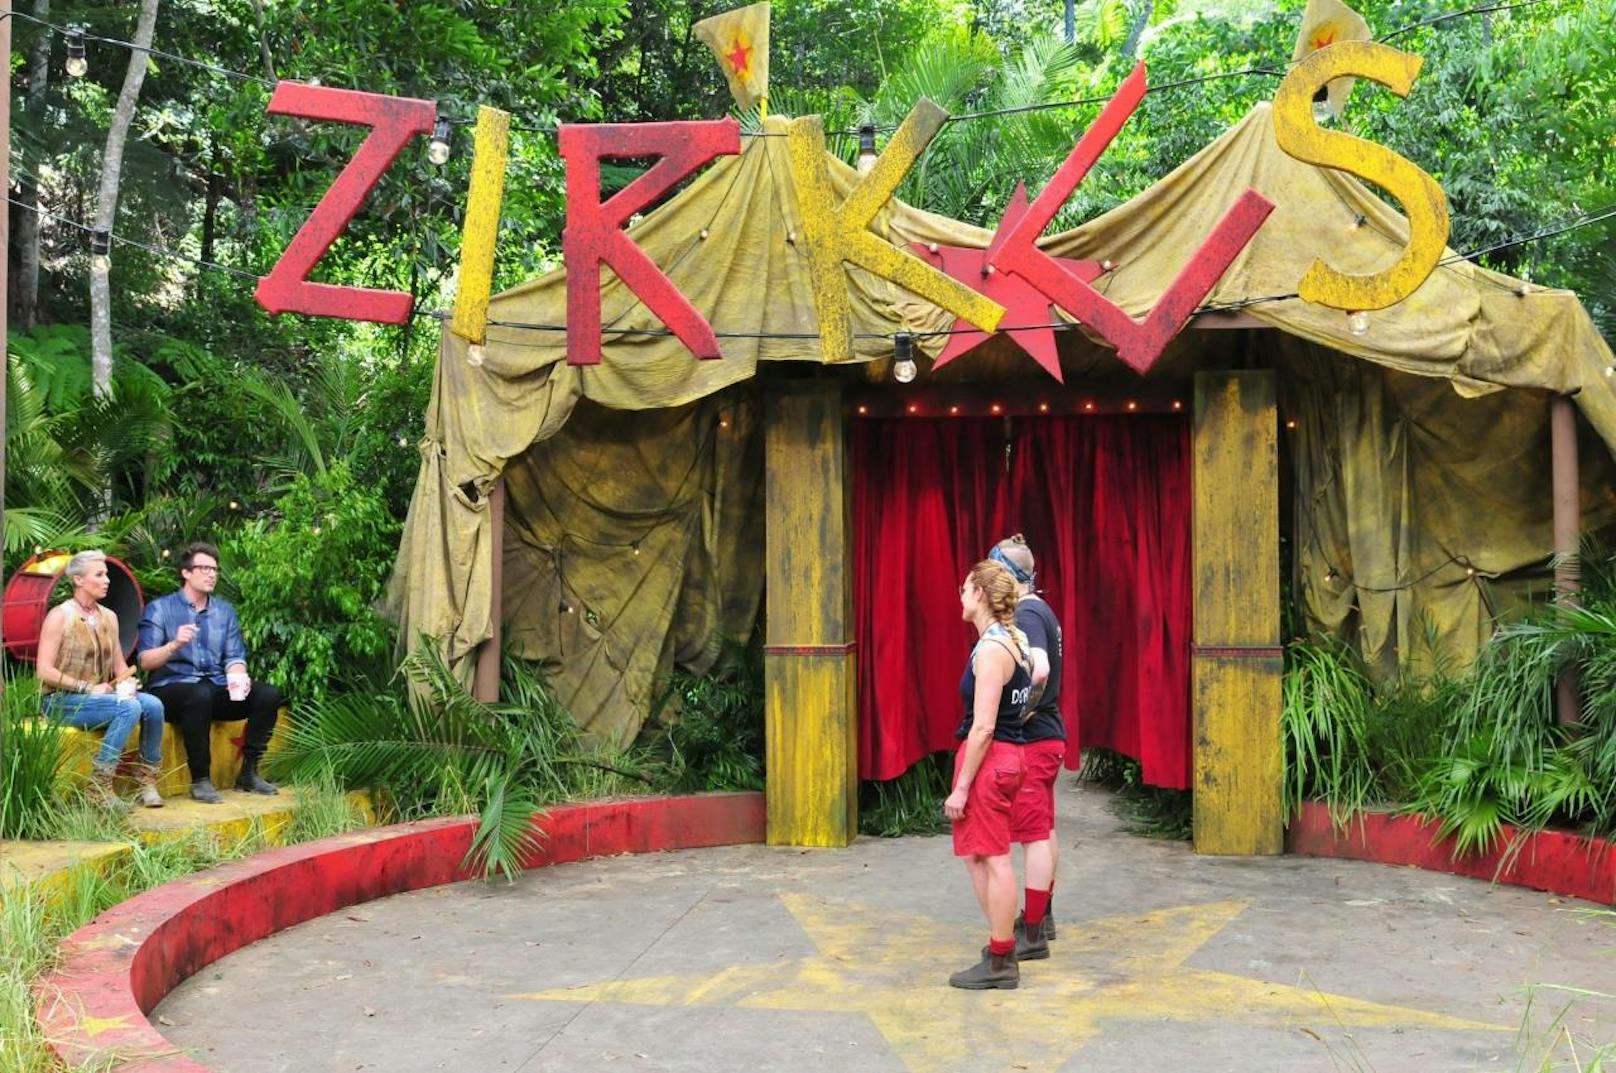 Dschungelprüfung "Zirkus Felido"! Doreen Dietel (r.) und Felix van Deventer müssen gemeinsam antreten und ihre Geschicklichkeit beweisen